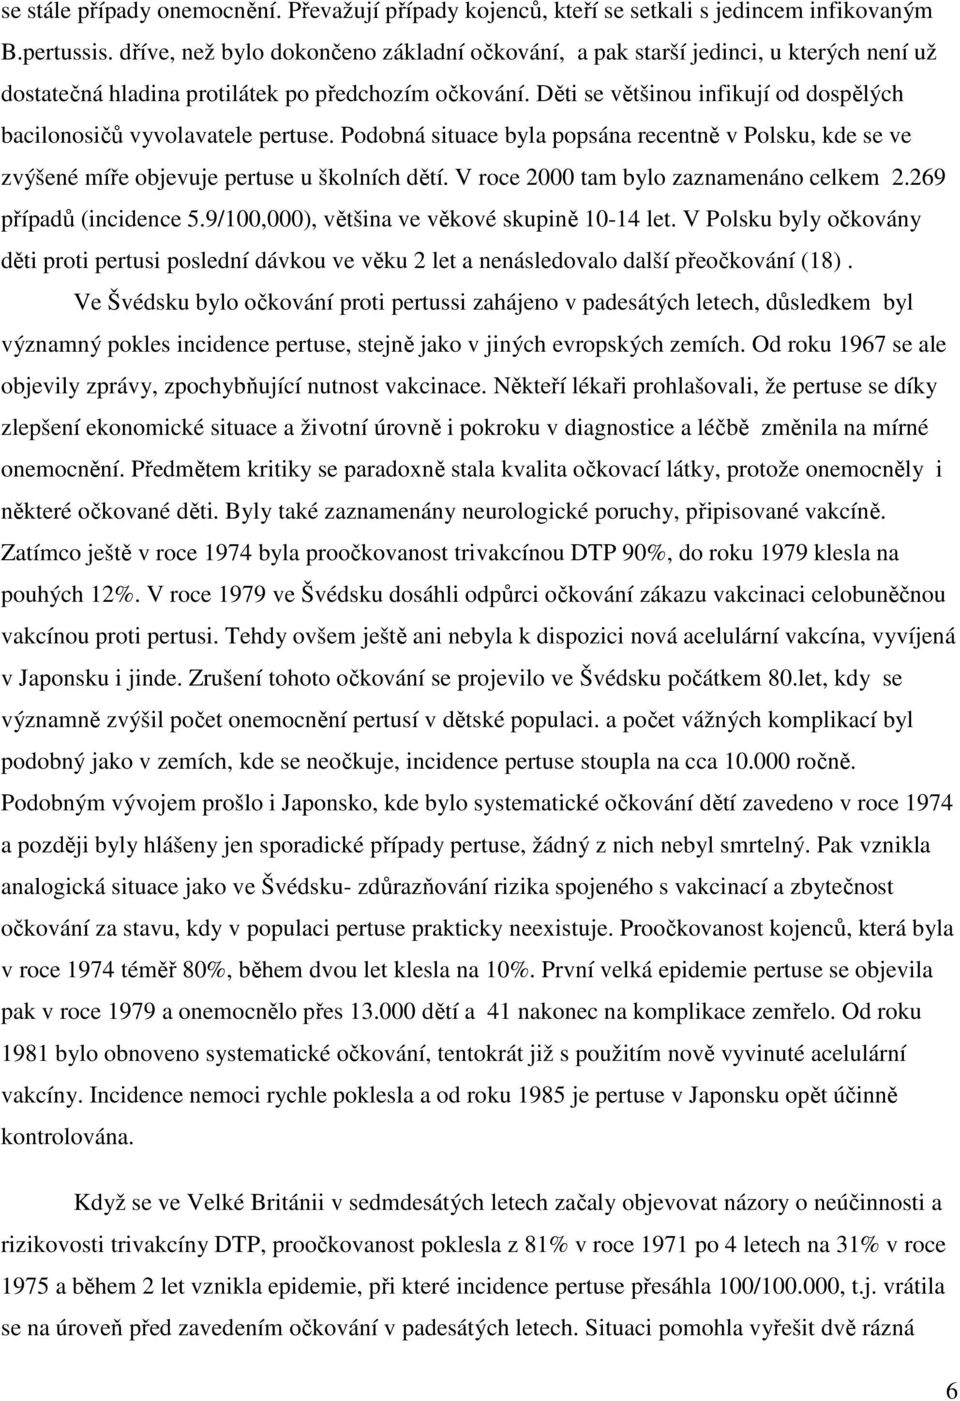 Děti se většinou infikují od dospělých bacilonosičů vyvolavatele pertuse. Podobná situace byla popsána recentně v Polsku, kde se ve zvýšené míře objevuje pertuse u školních dětí.